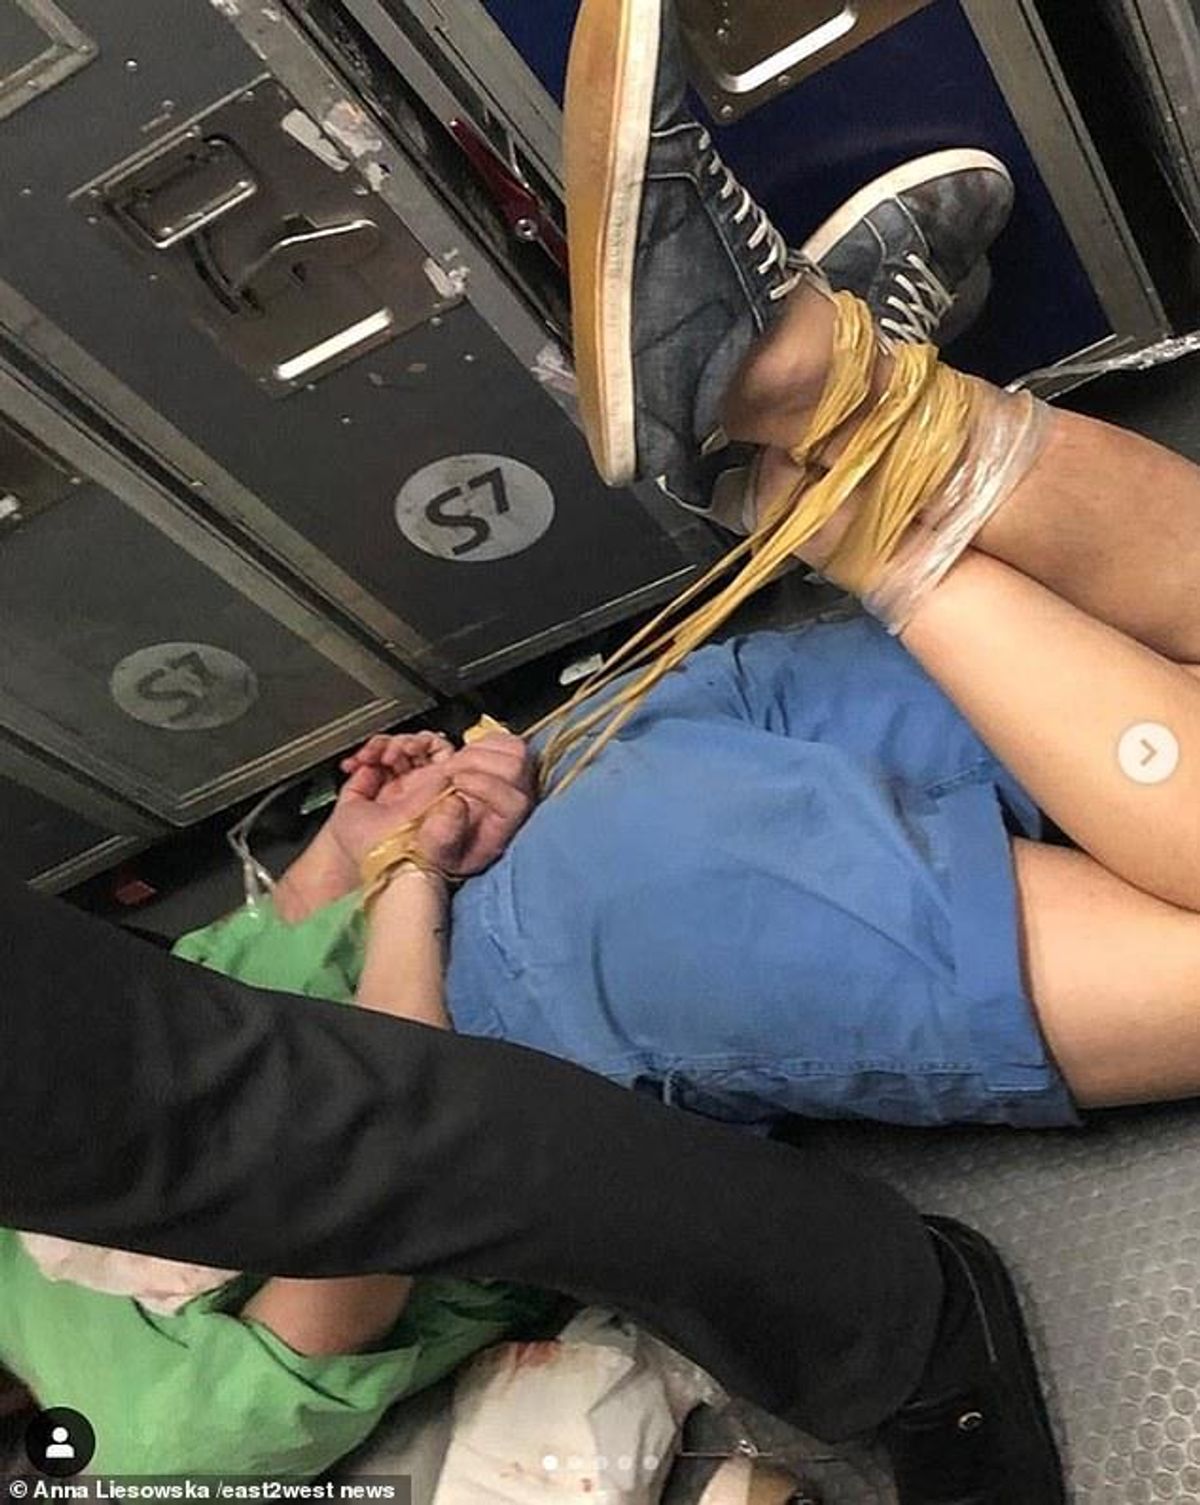 man on plane on the ground drunk